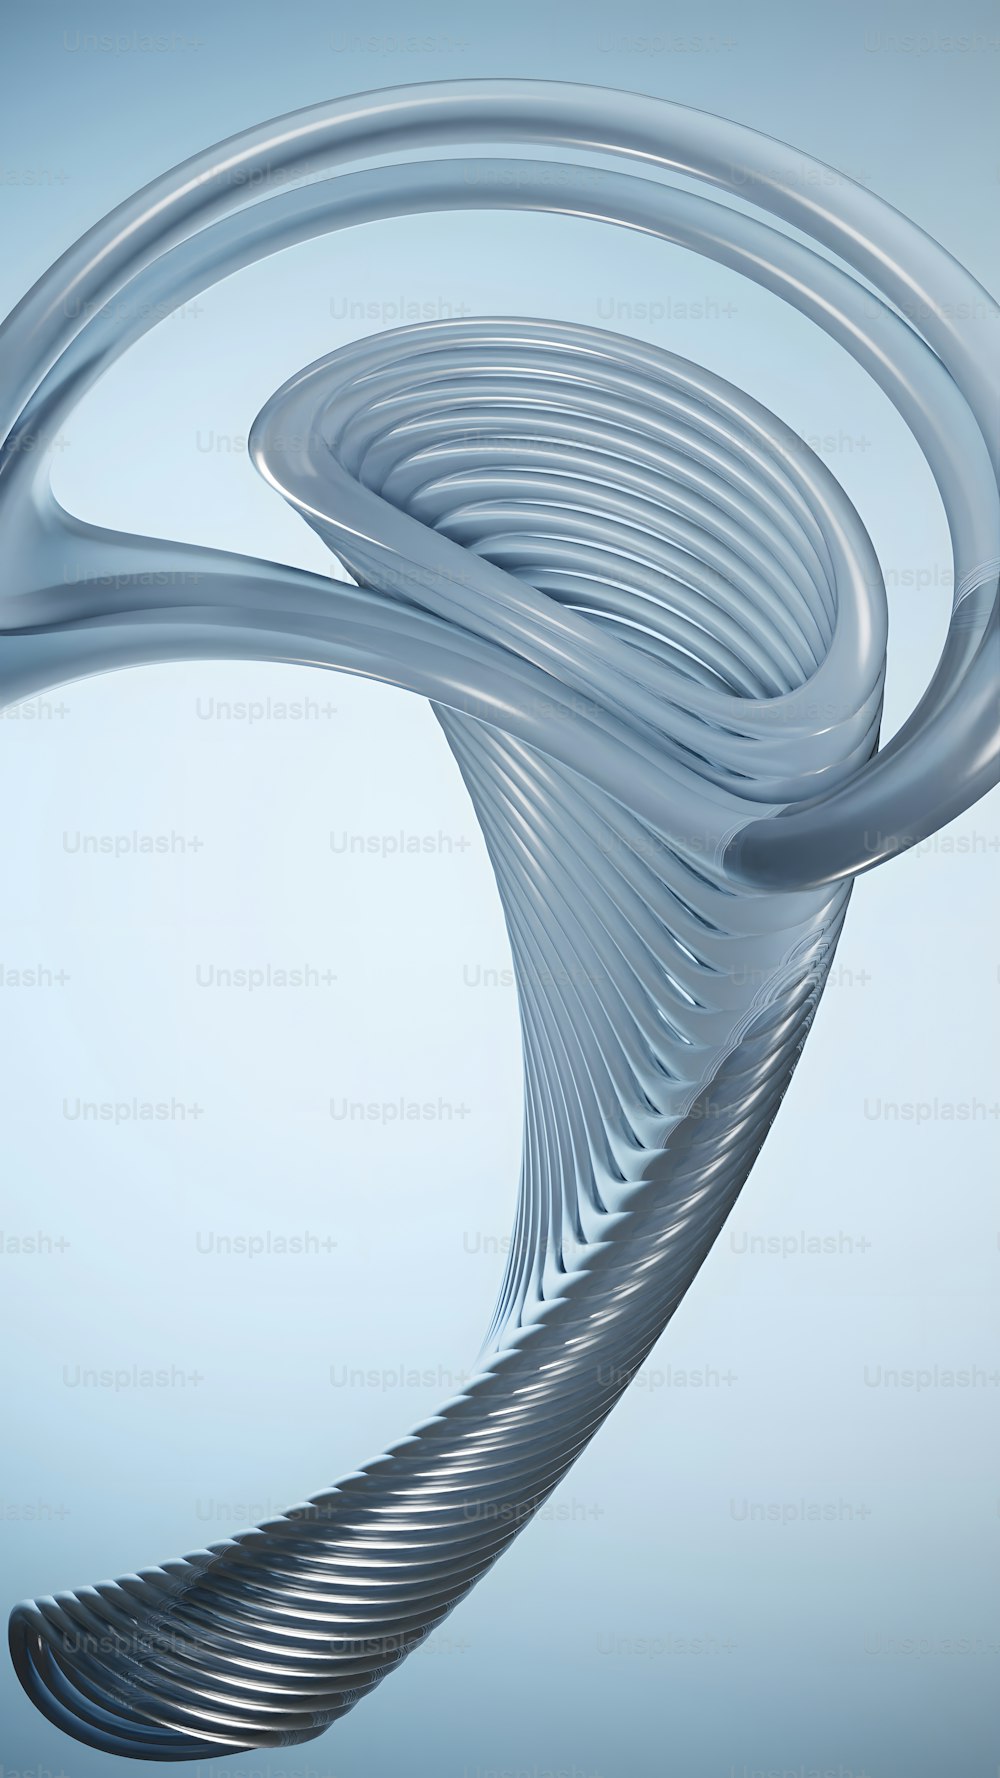 Una imagen abstracta de un diseño en espiral sobre un fondo azul